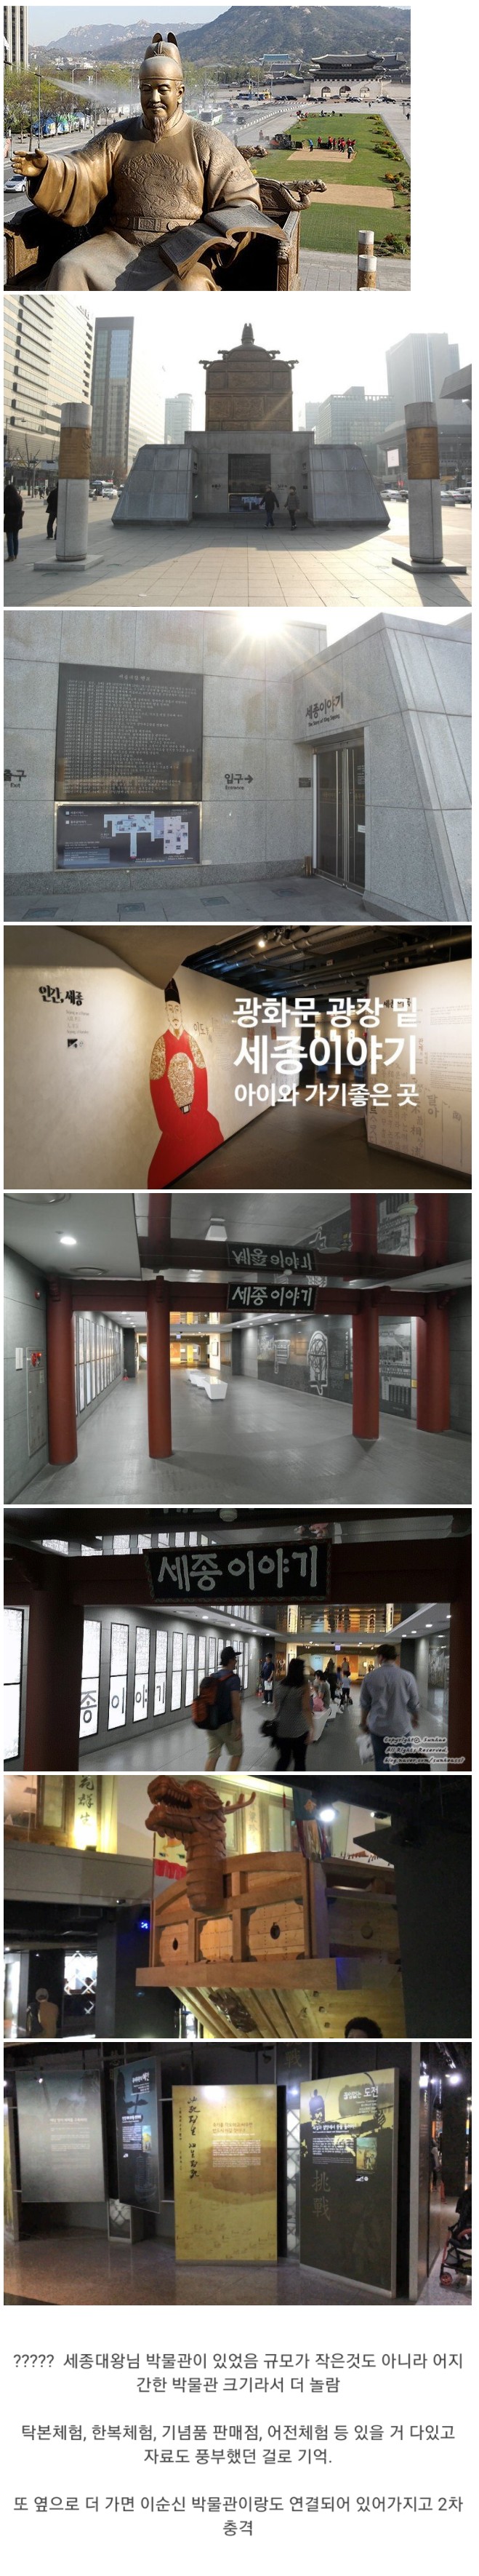 썸네일-서울사는 사람들도 은근 모르는 사실-이미지